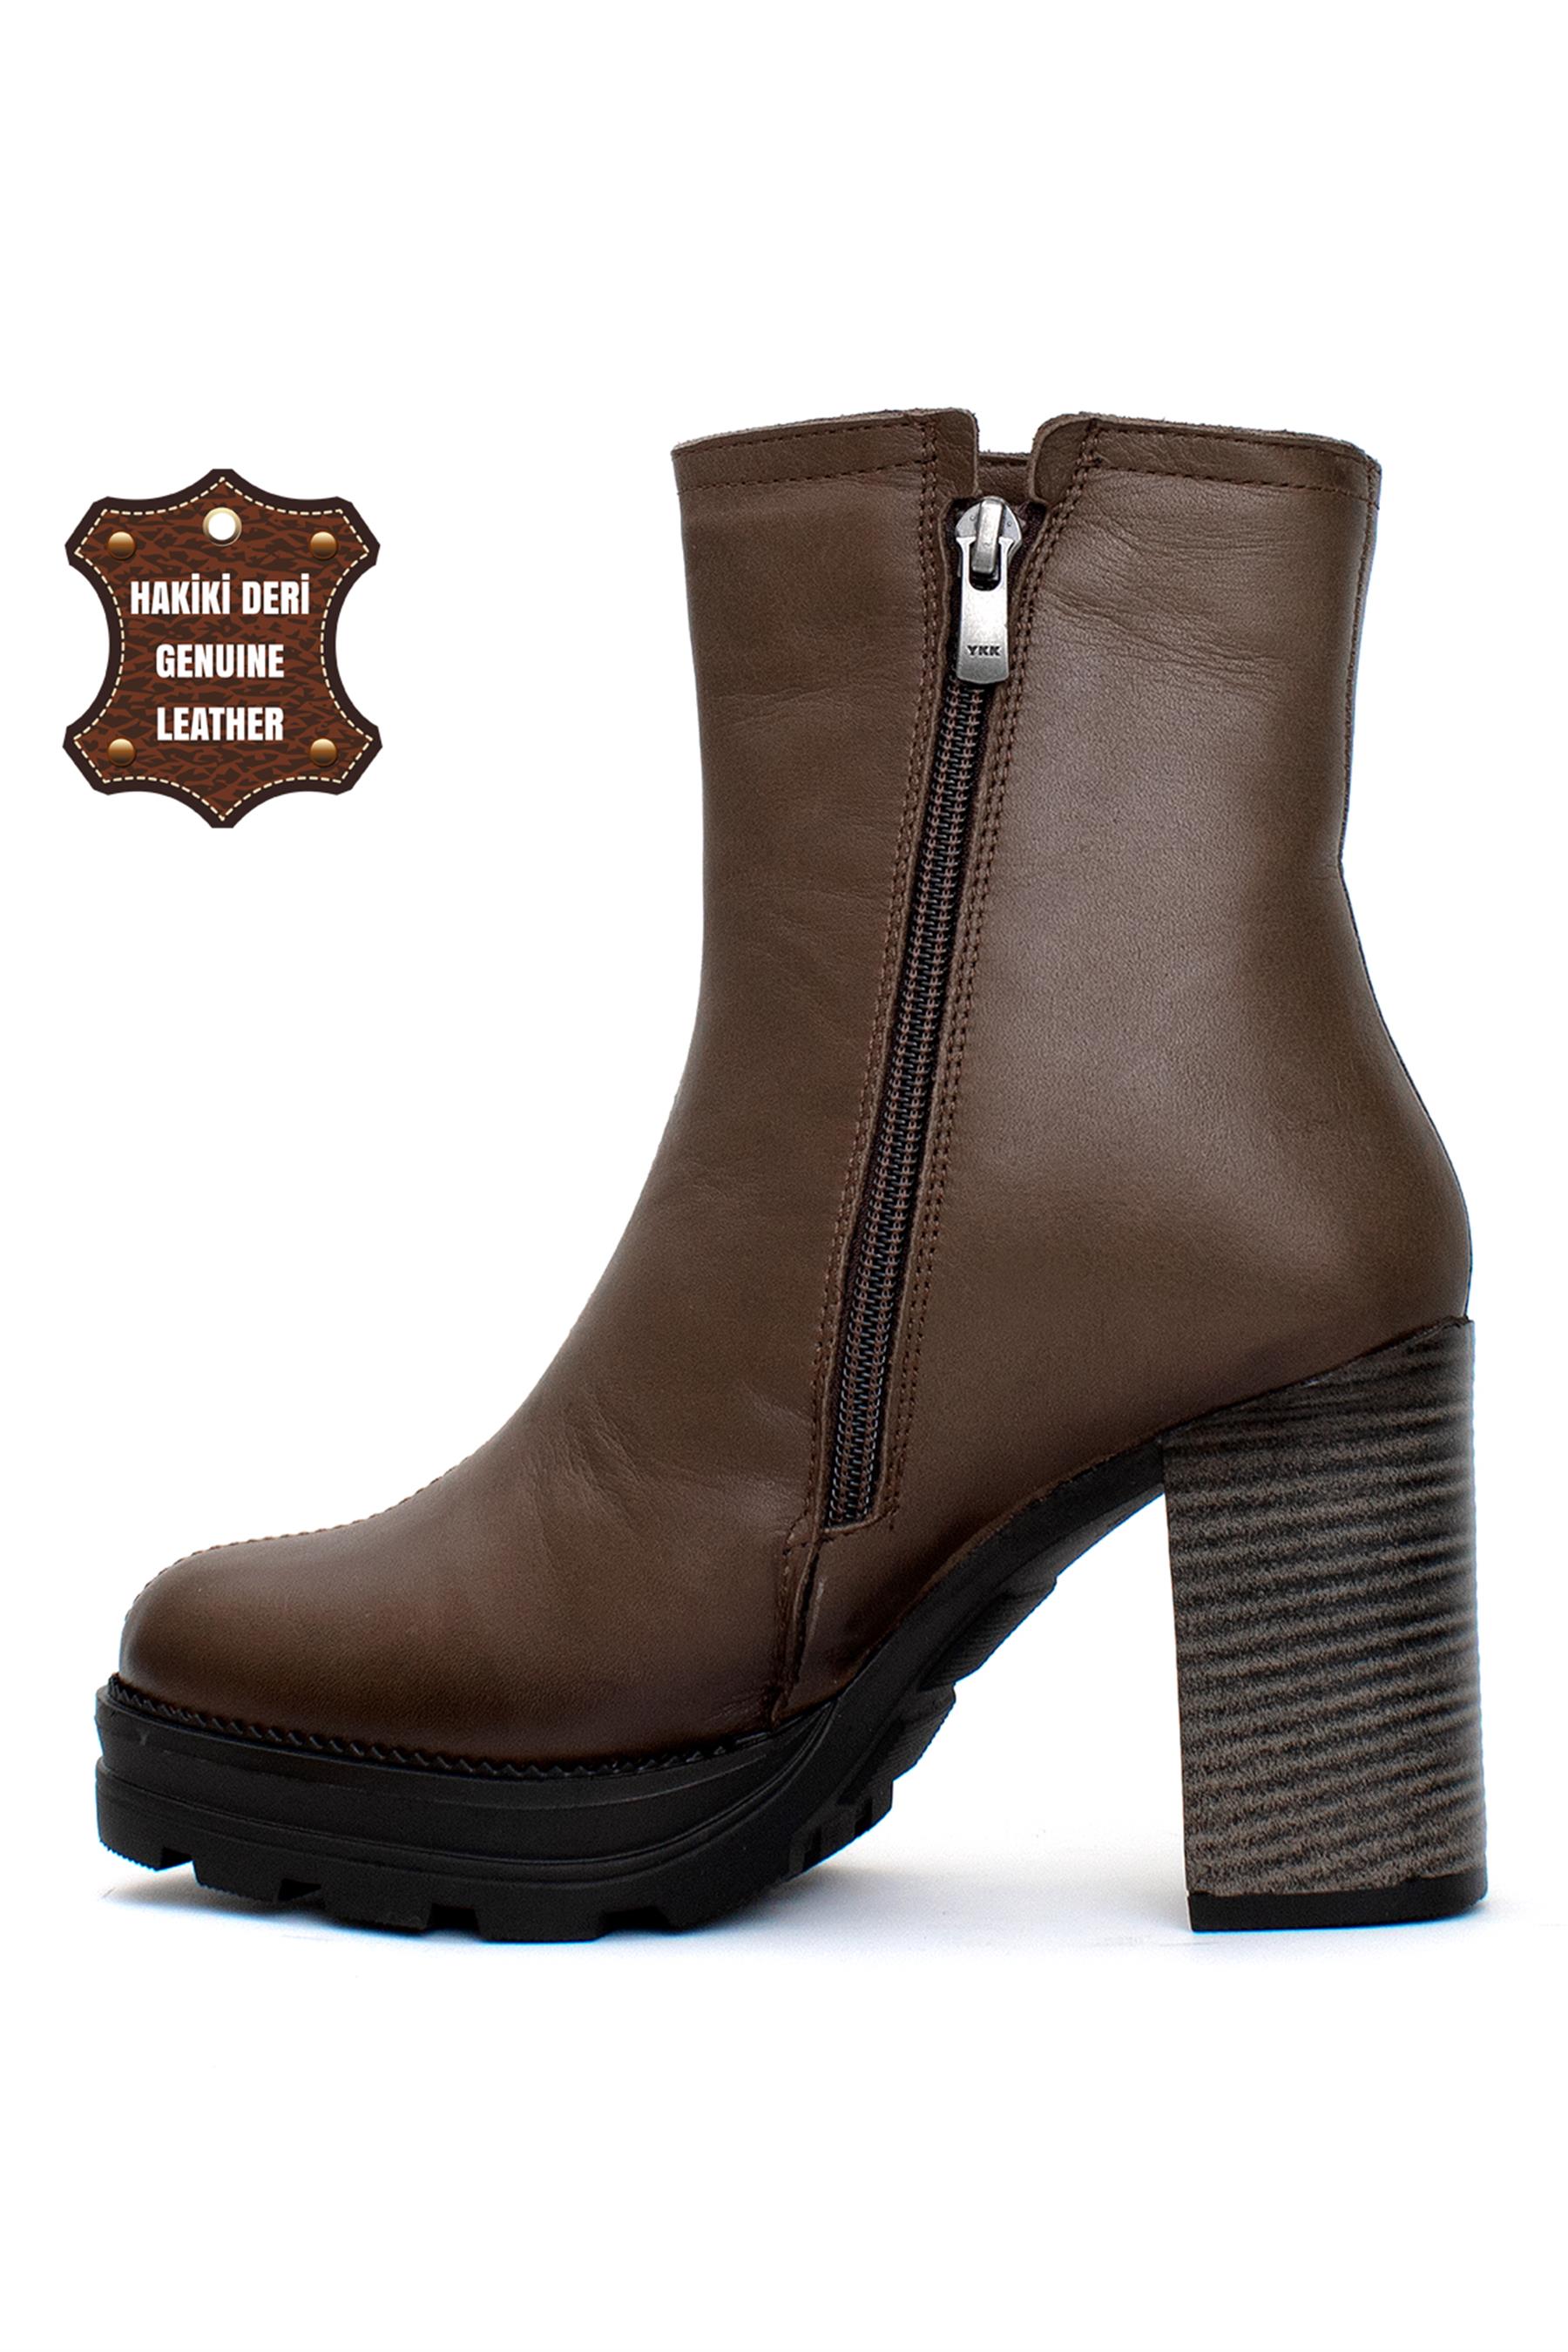 Mammamia 23KB-5090 Kadın Hakiki Deri Topuklu Bot Kahverengi - Ayakkabı  Fuarı Elit